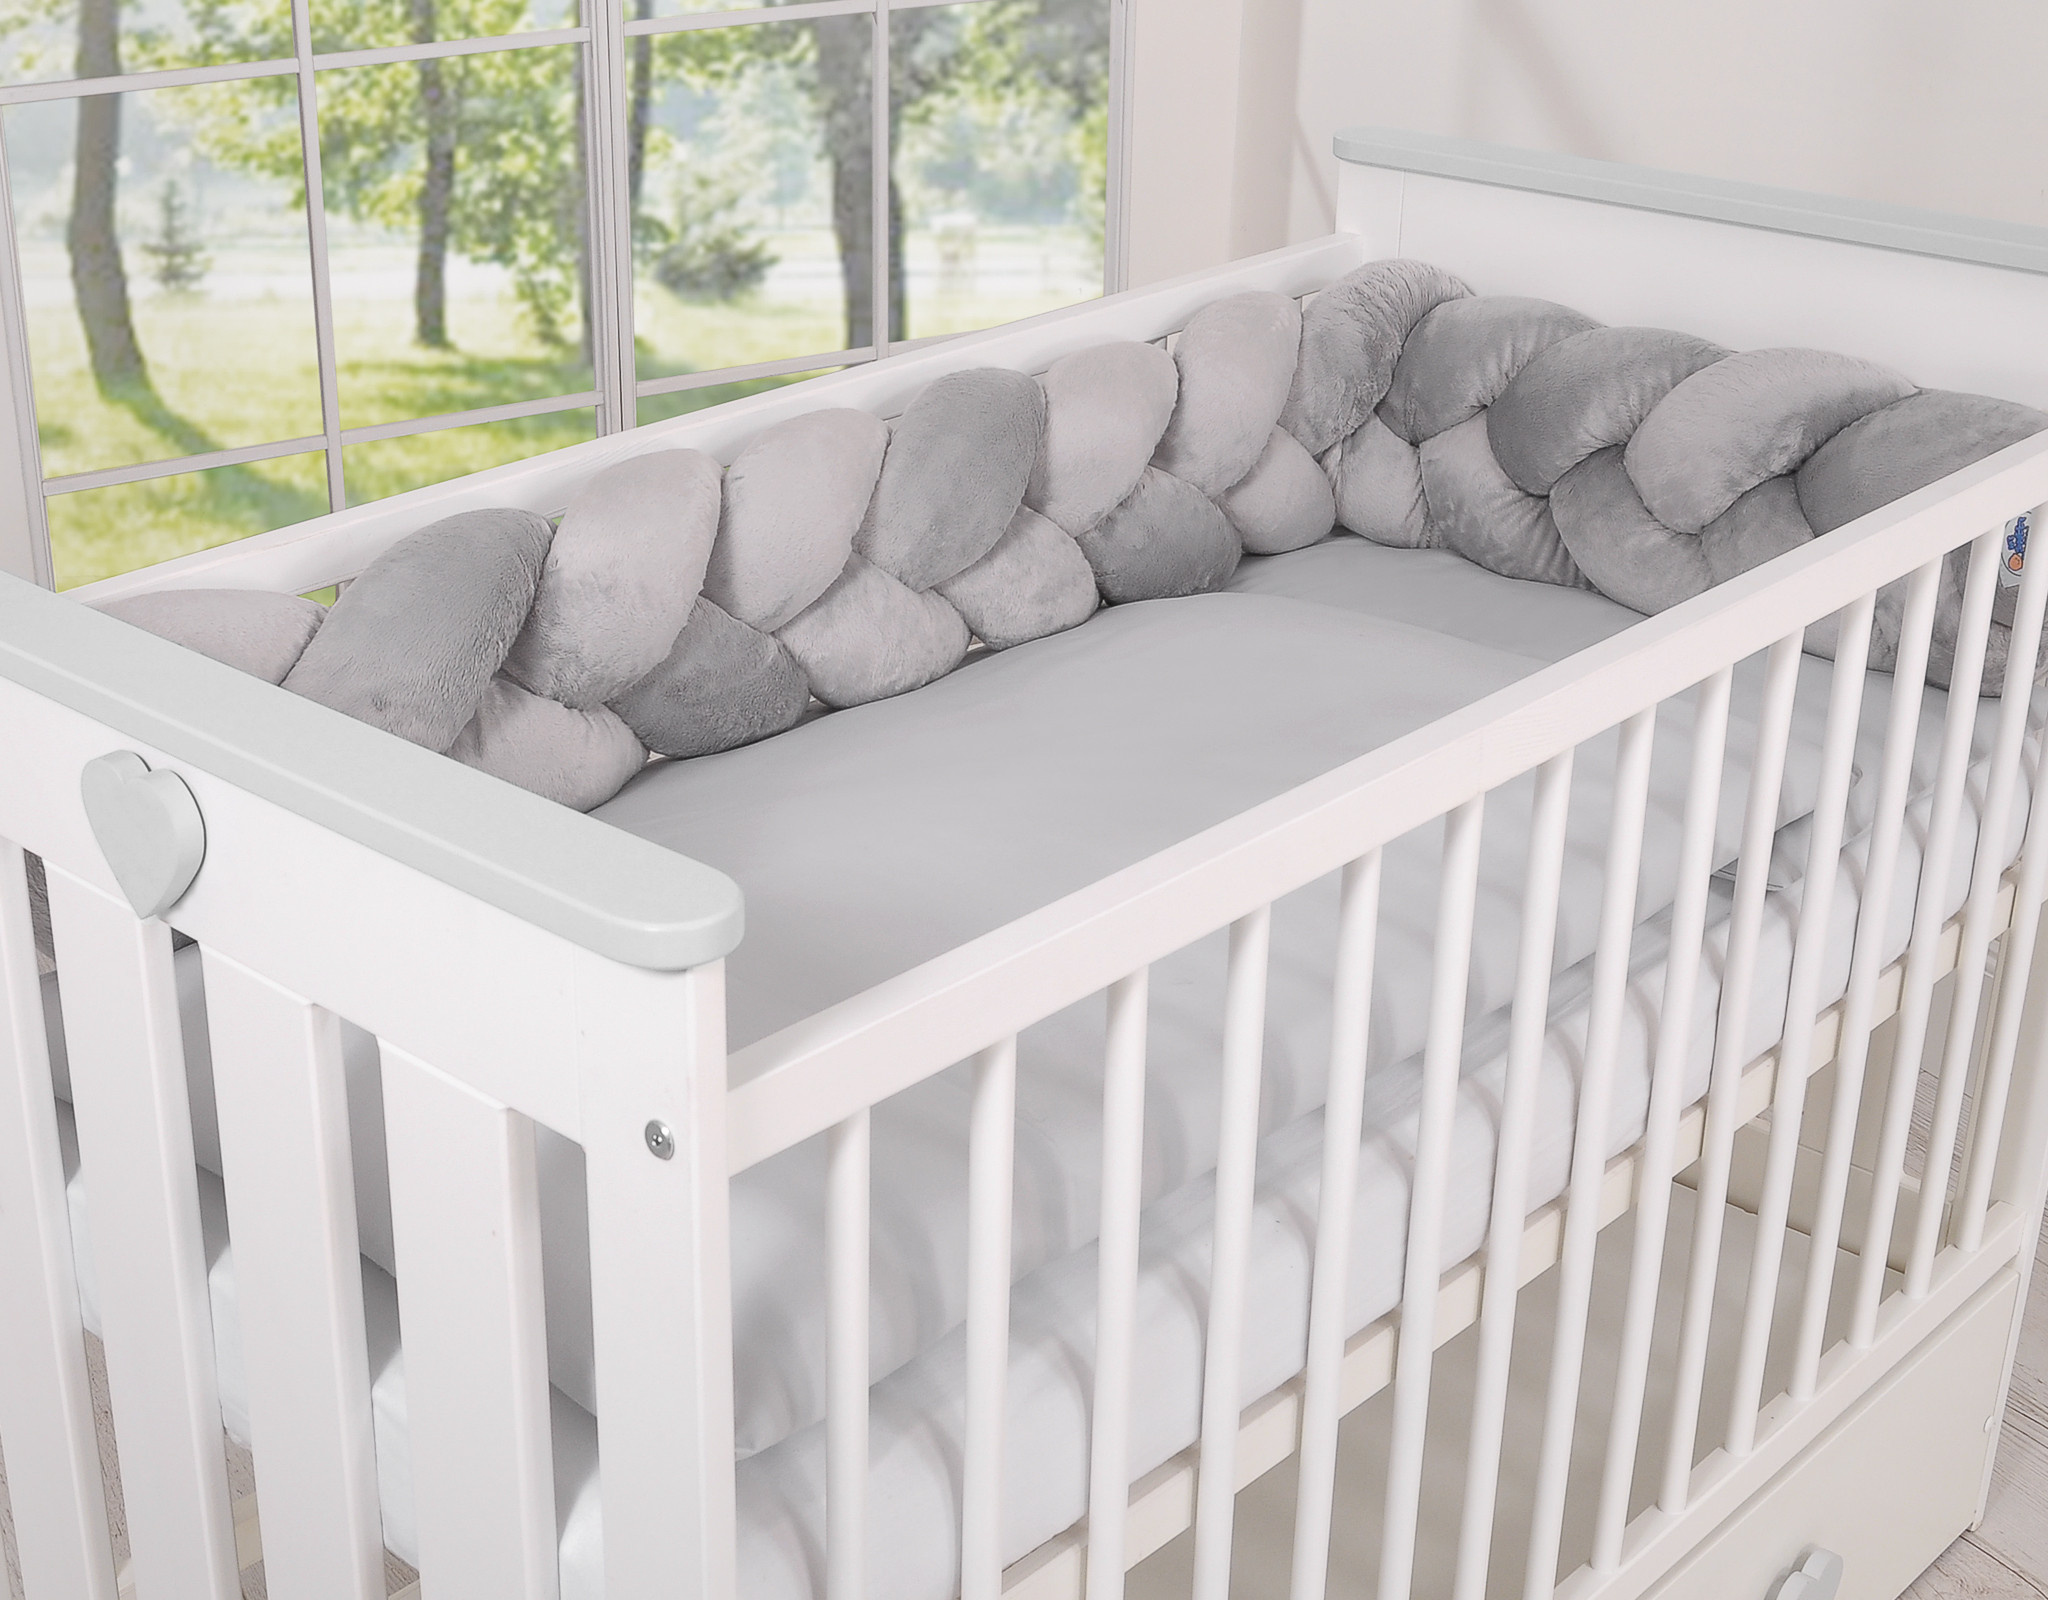 Tour de lit pour bébé: quelle tendance pour 2022 ?